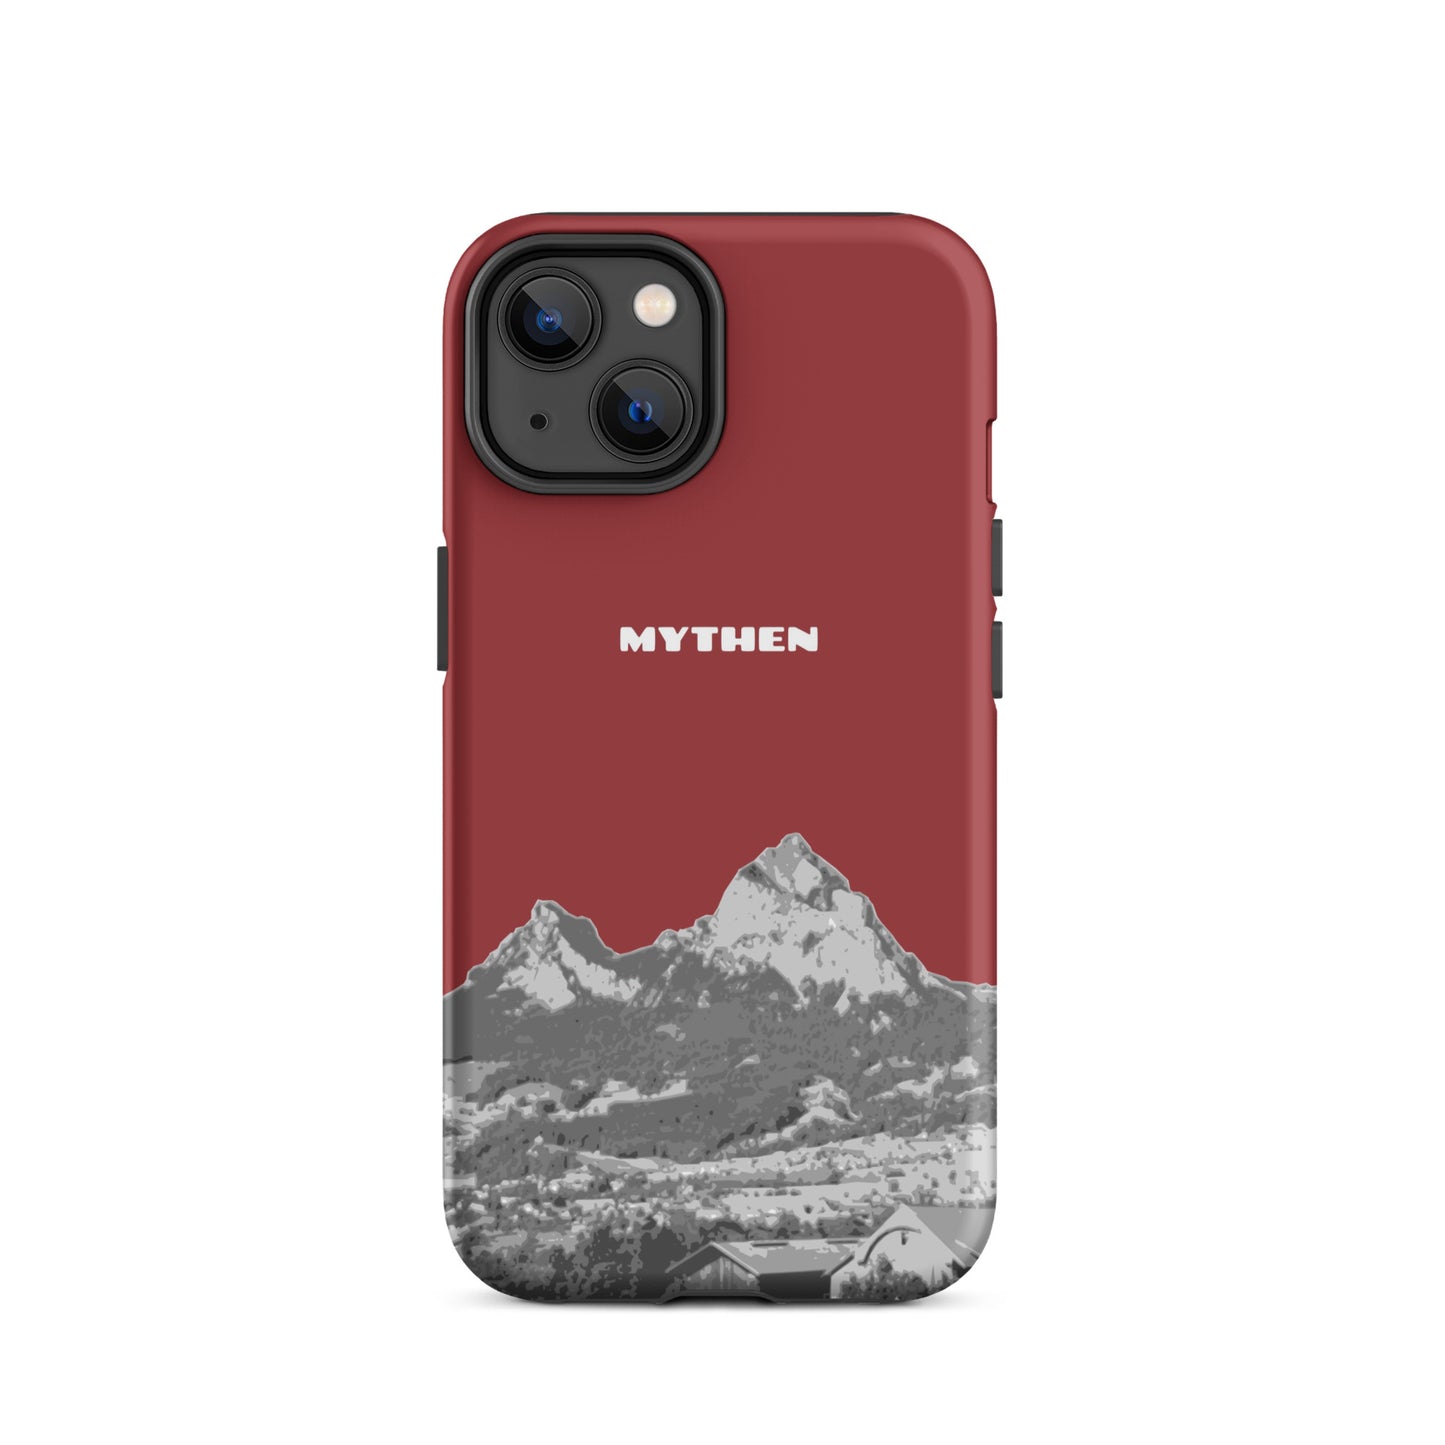 Hülle für das iPhone 14 von Apple in der Farbe Rot, die den Grossen Mythen und den Kleinen Mythen bei Schwyz zeigt. 